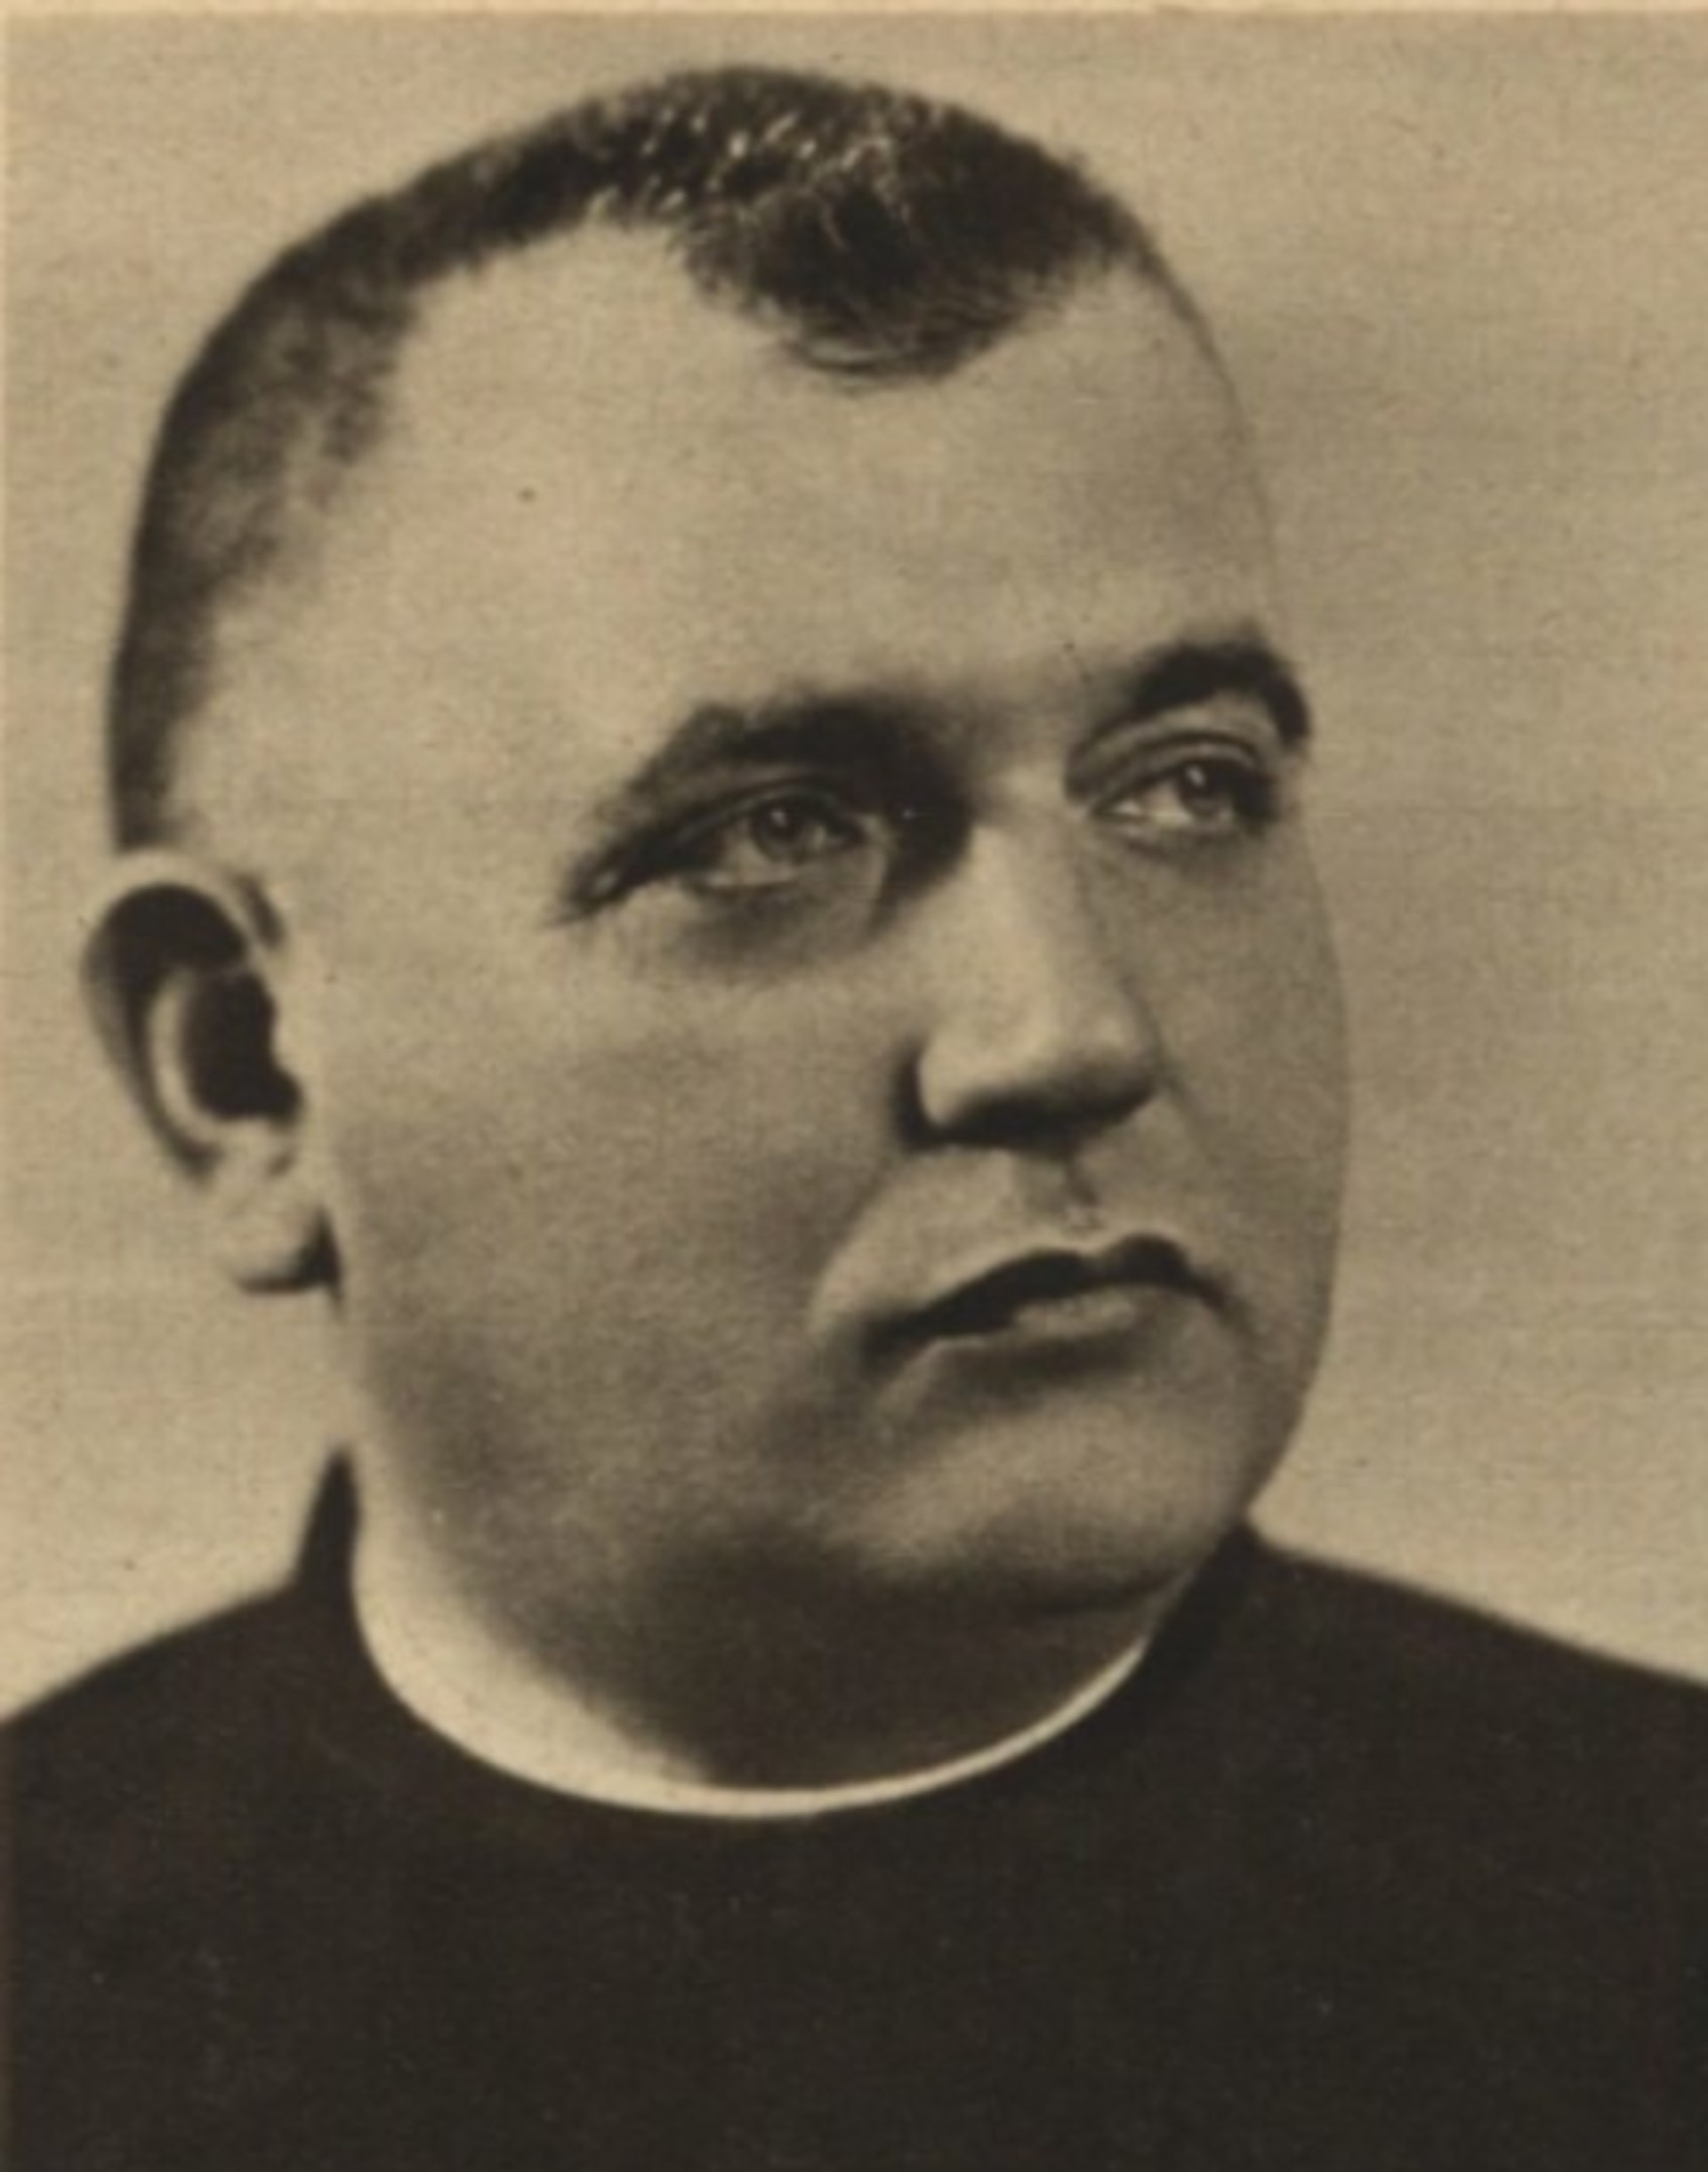 Jozef Tiso v roce 1938 v časopise Pestrý týden 